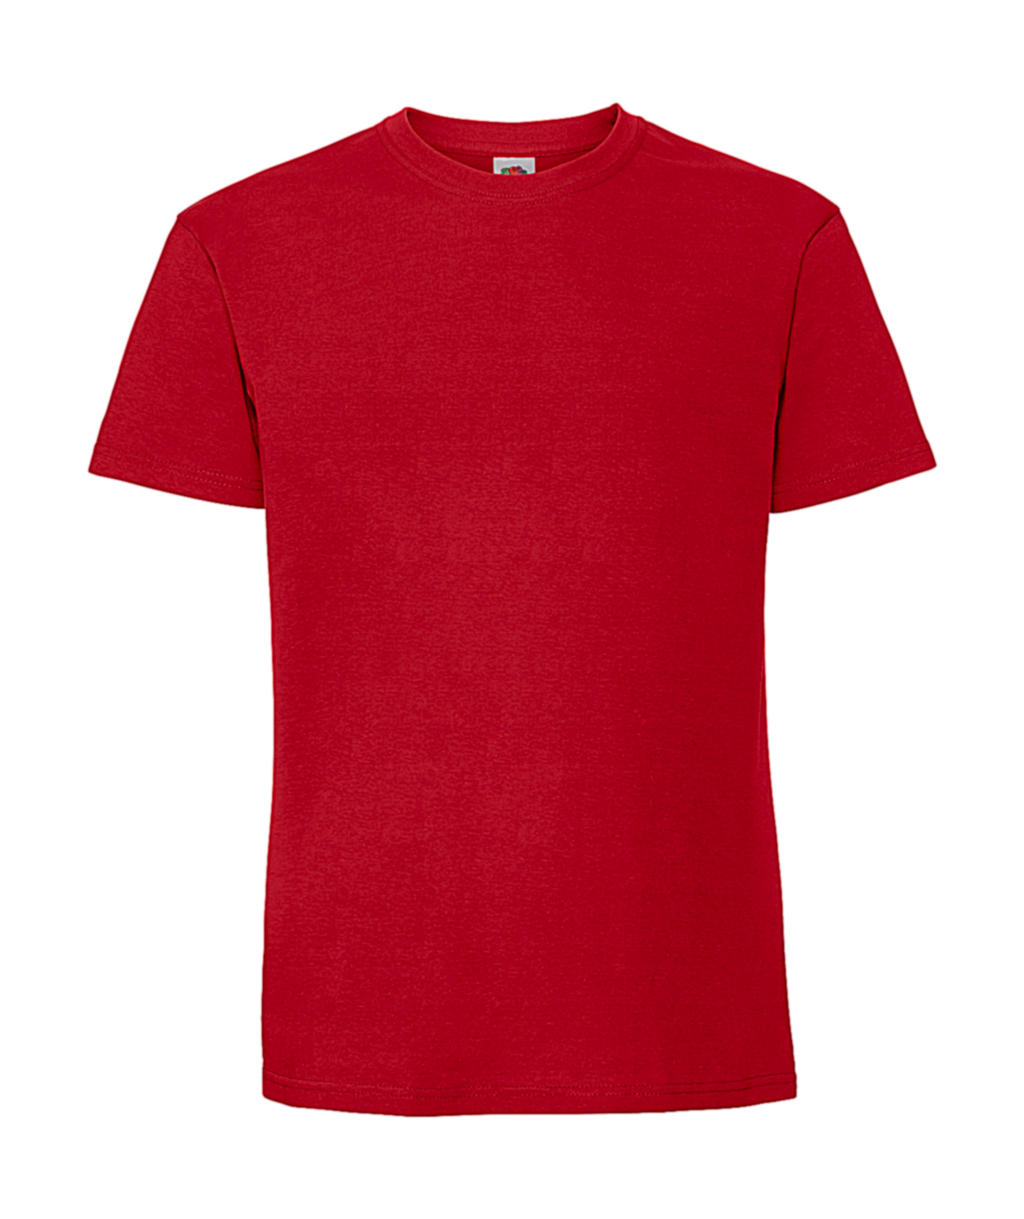 Tričko z prstencovej bavlny Iconic 195 Premium - red